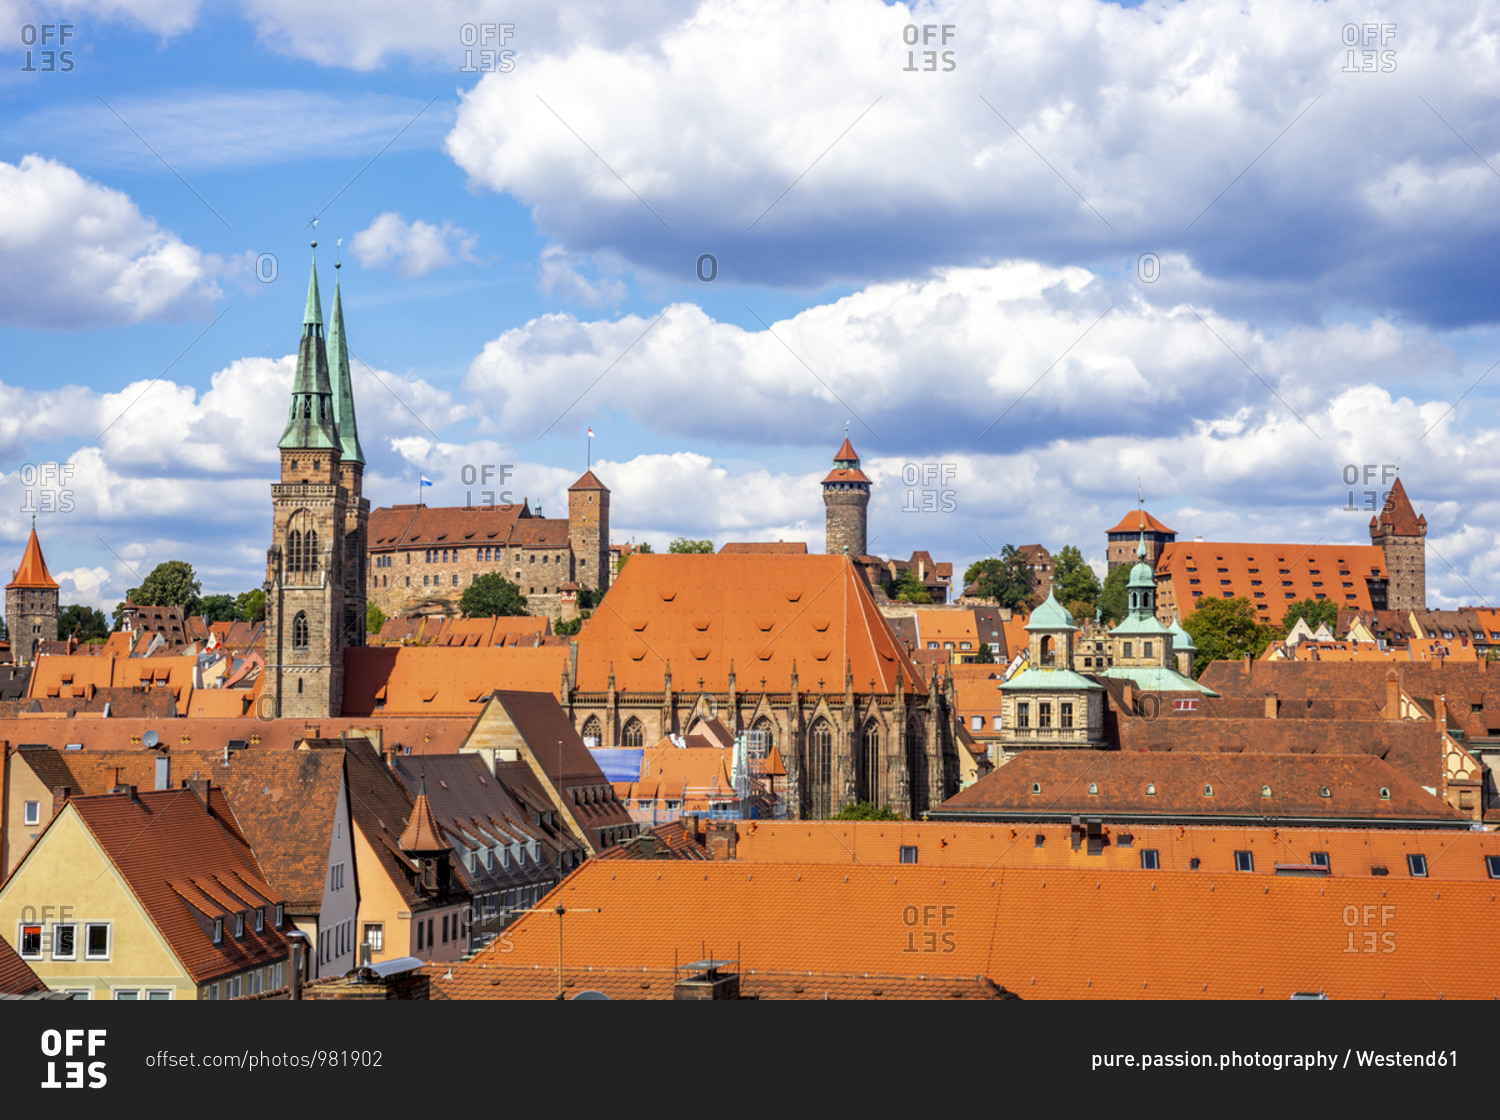 Germany- Bavaria- Nuremberg- Clouds over old town buildings surrounding Nuremberg Castle